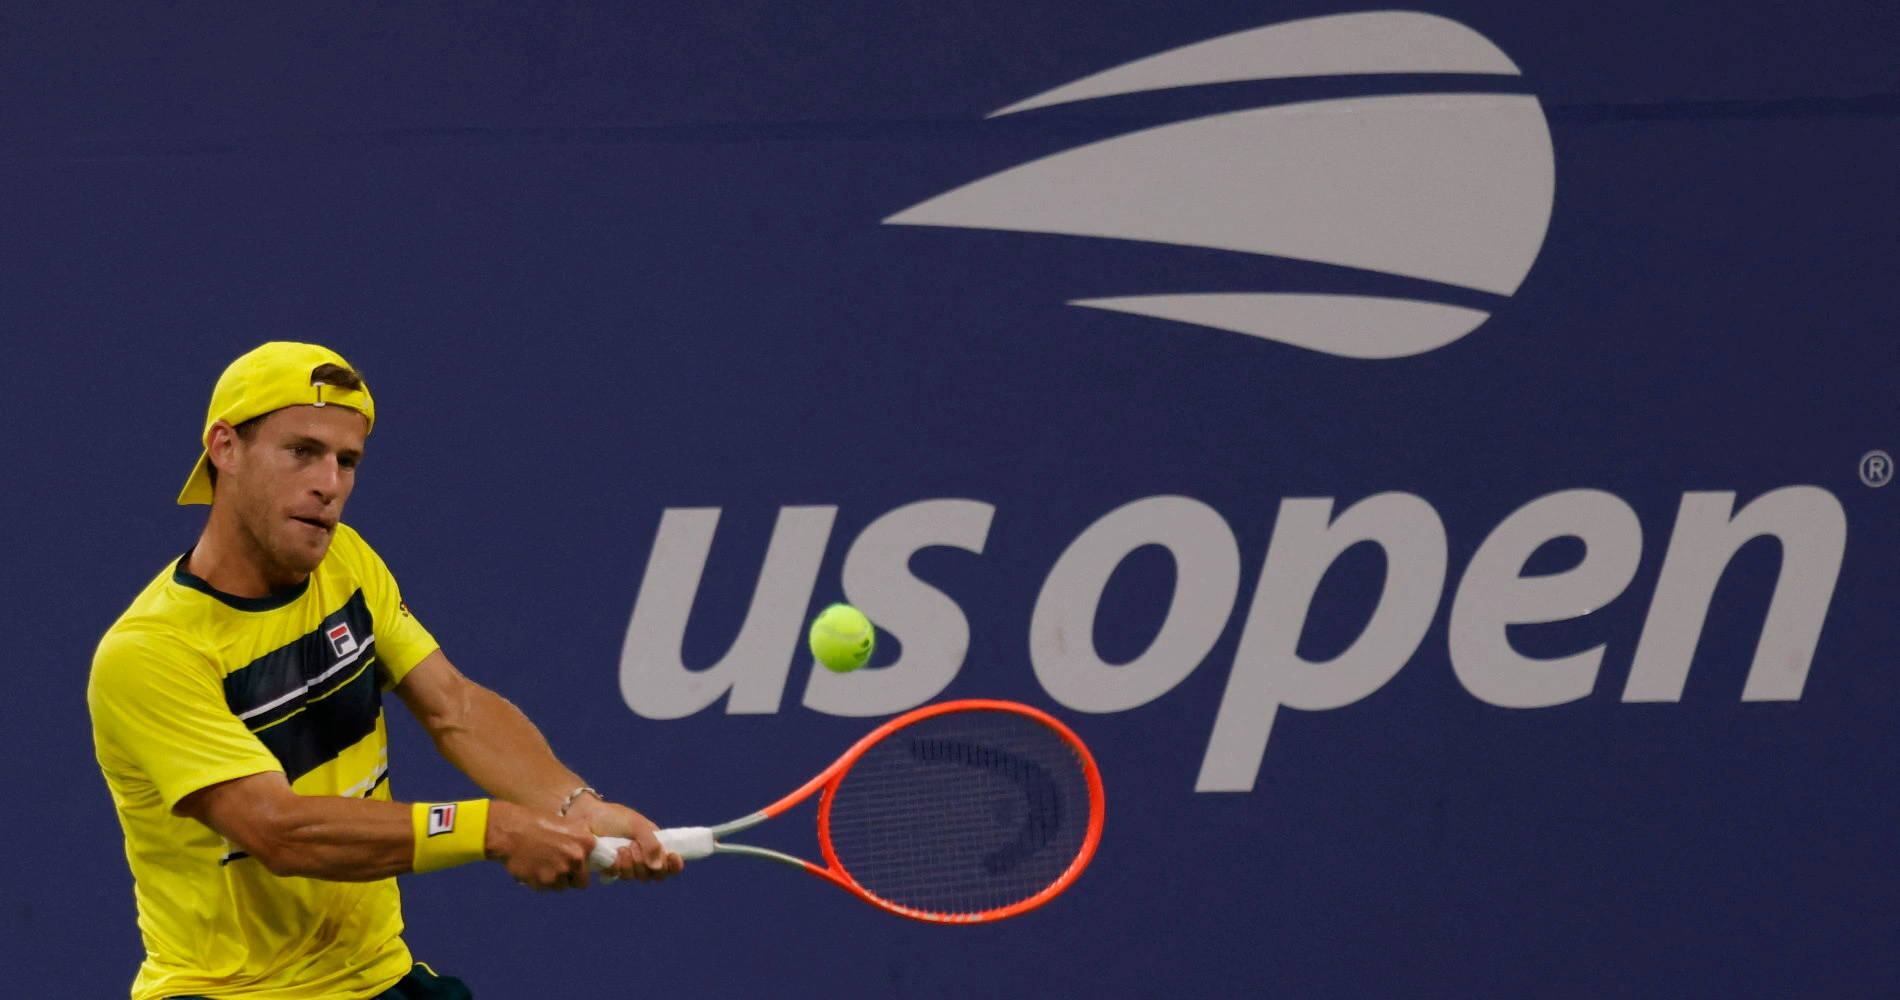 Tennis Pro, Diego Schwartzman in action in yellow attire Wallpaper